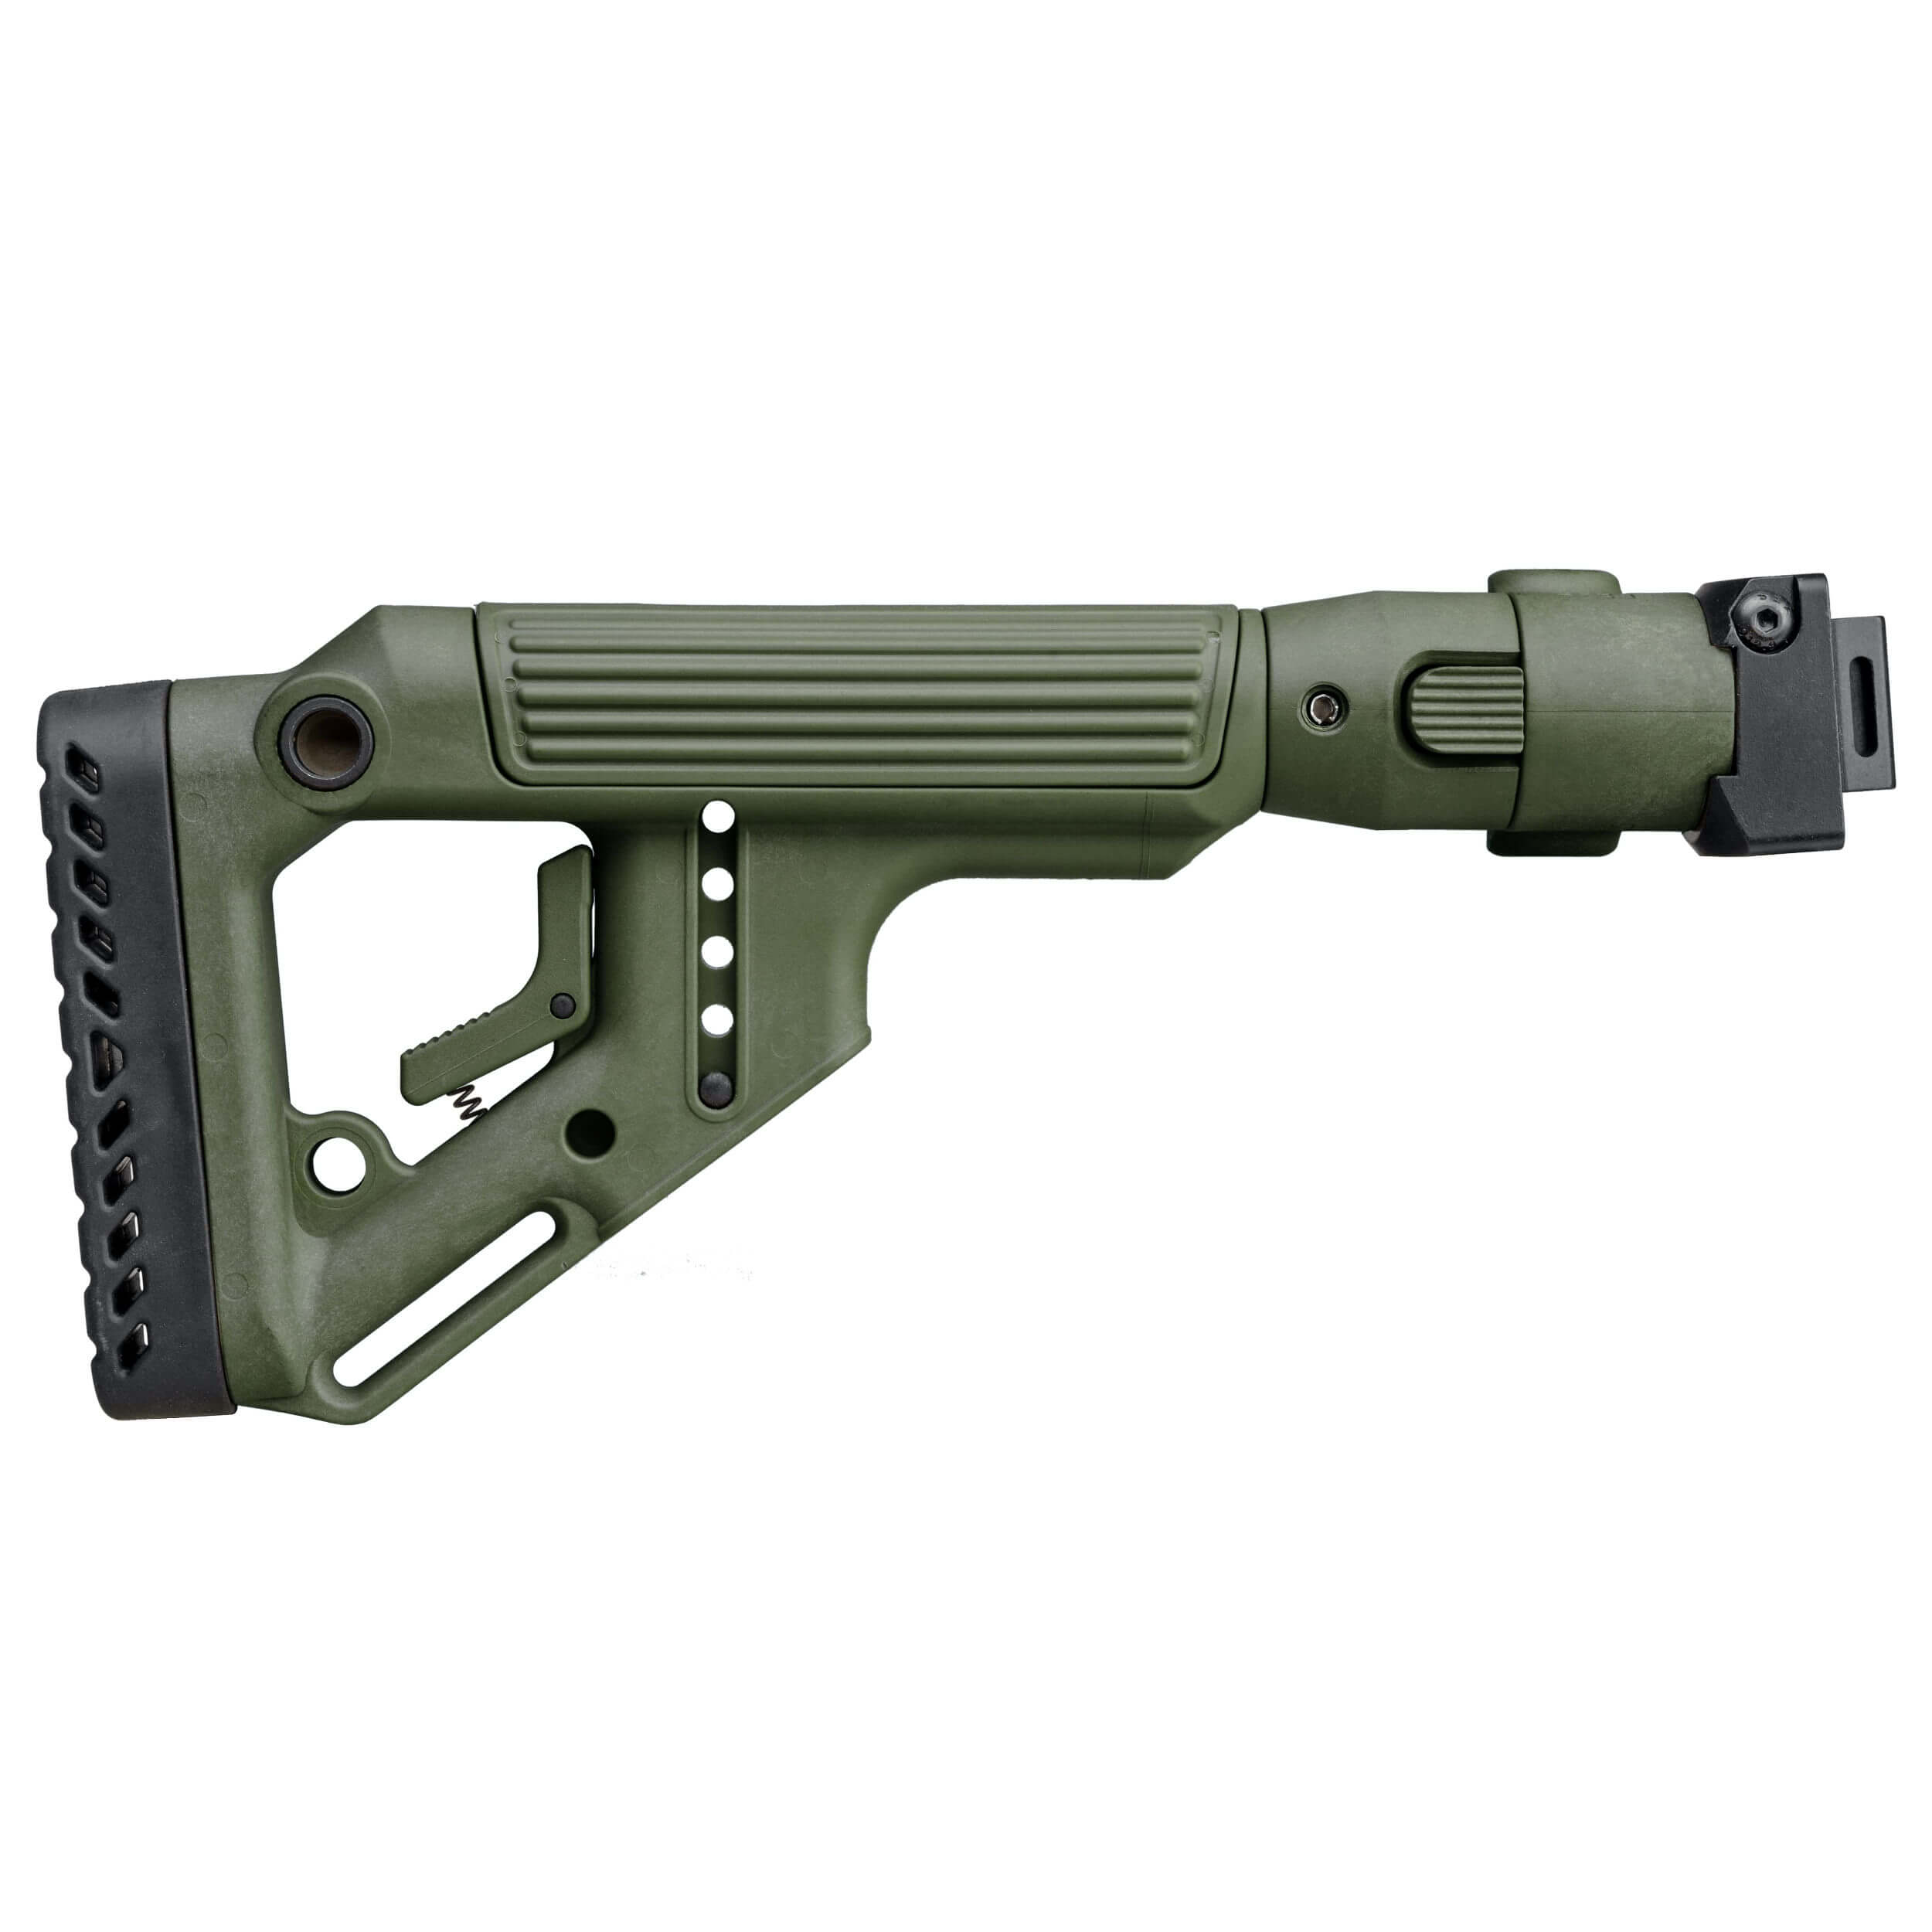 AKS-74U folding buttstock / cheek rest (Krinkov)